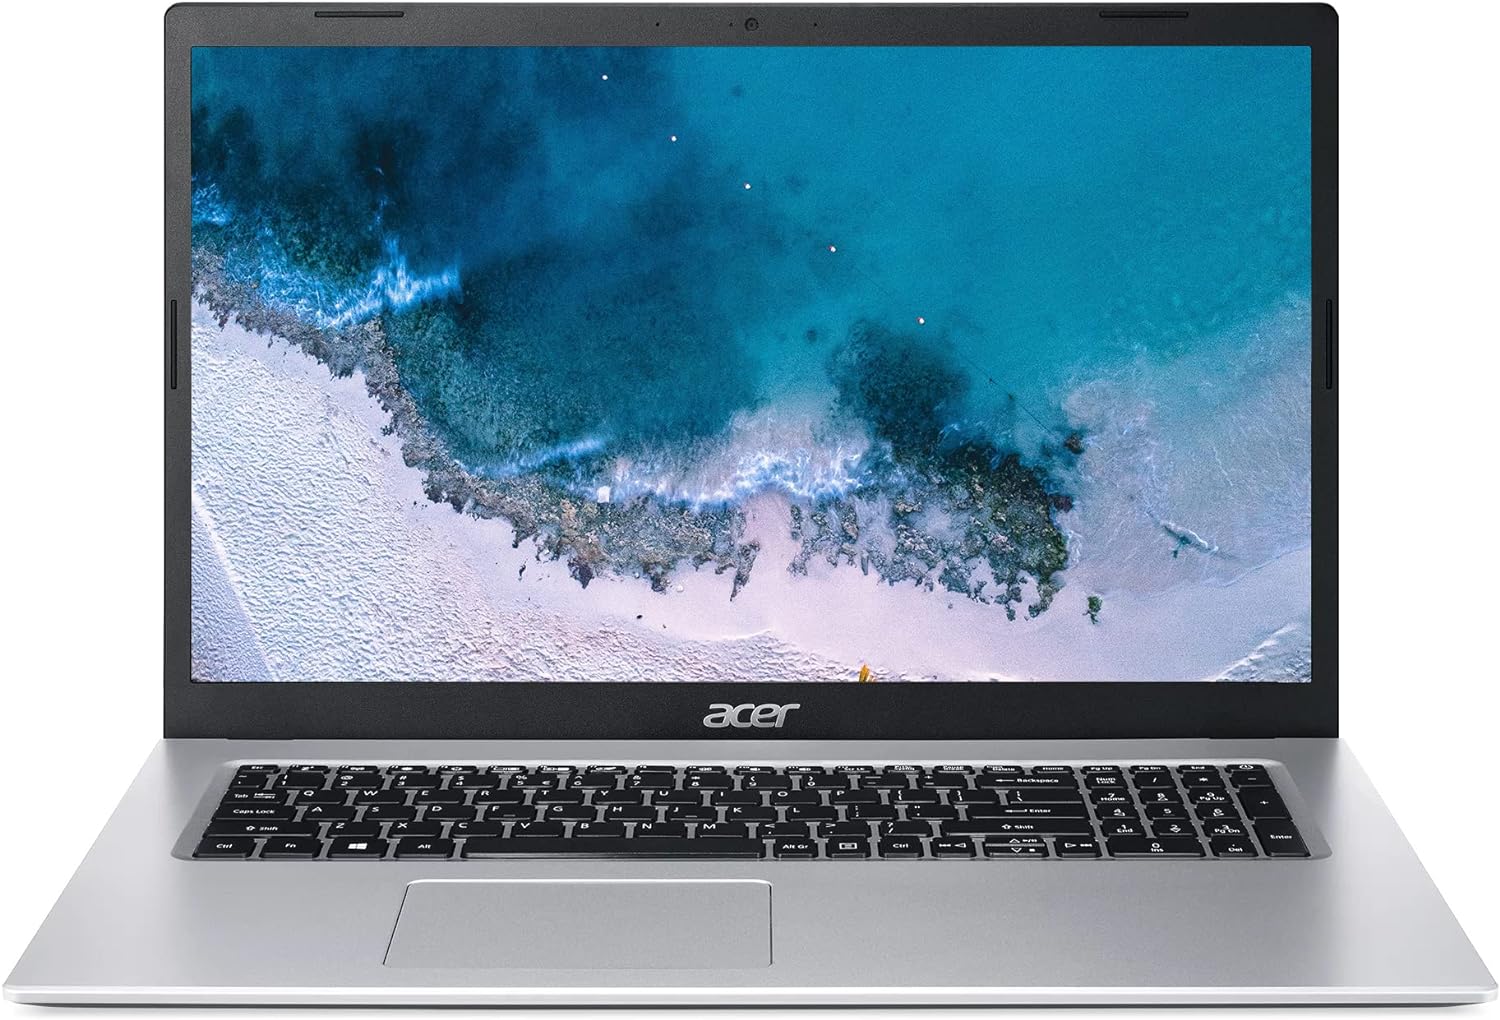 Acer Aspire 1 A115-32-C96U Slim Laptop | 15.6" FHD Display | Intel Celeron N4500 Processor | 4GB DDR4 | 128GB eMMC | WiFi 5 | Microsoft 365 Personal 1-Year Subscription | Windows 11 in S Mode, Silver